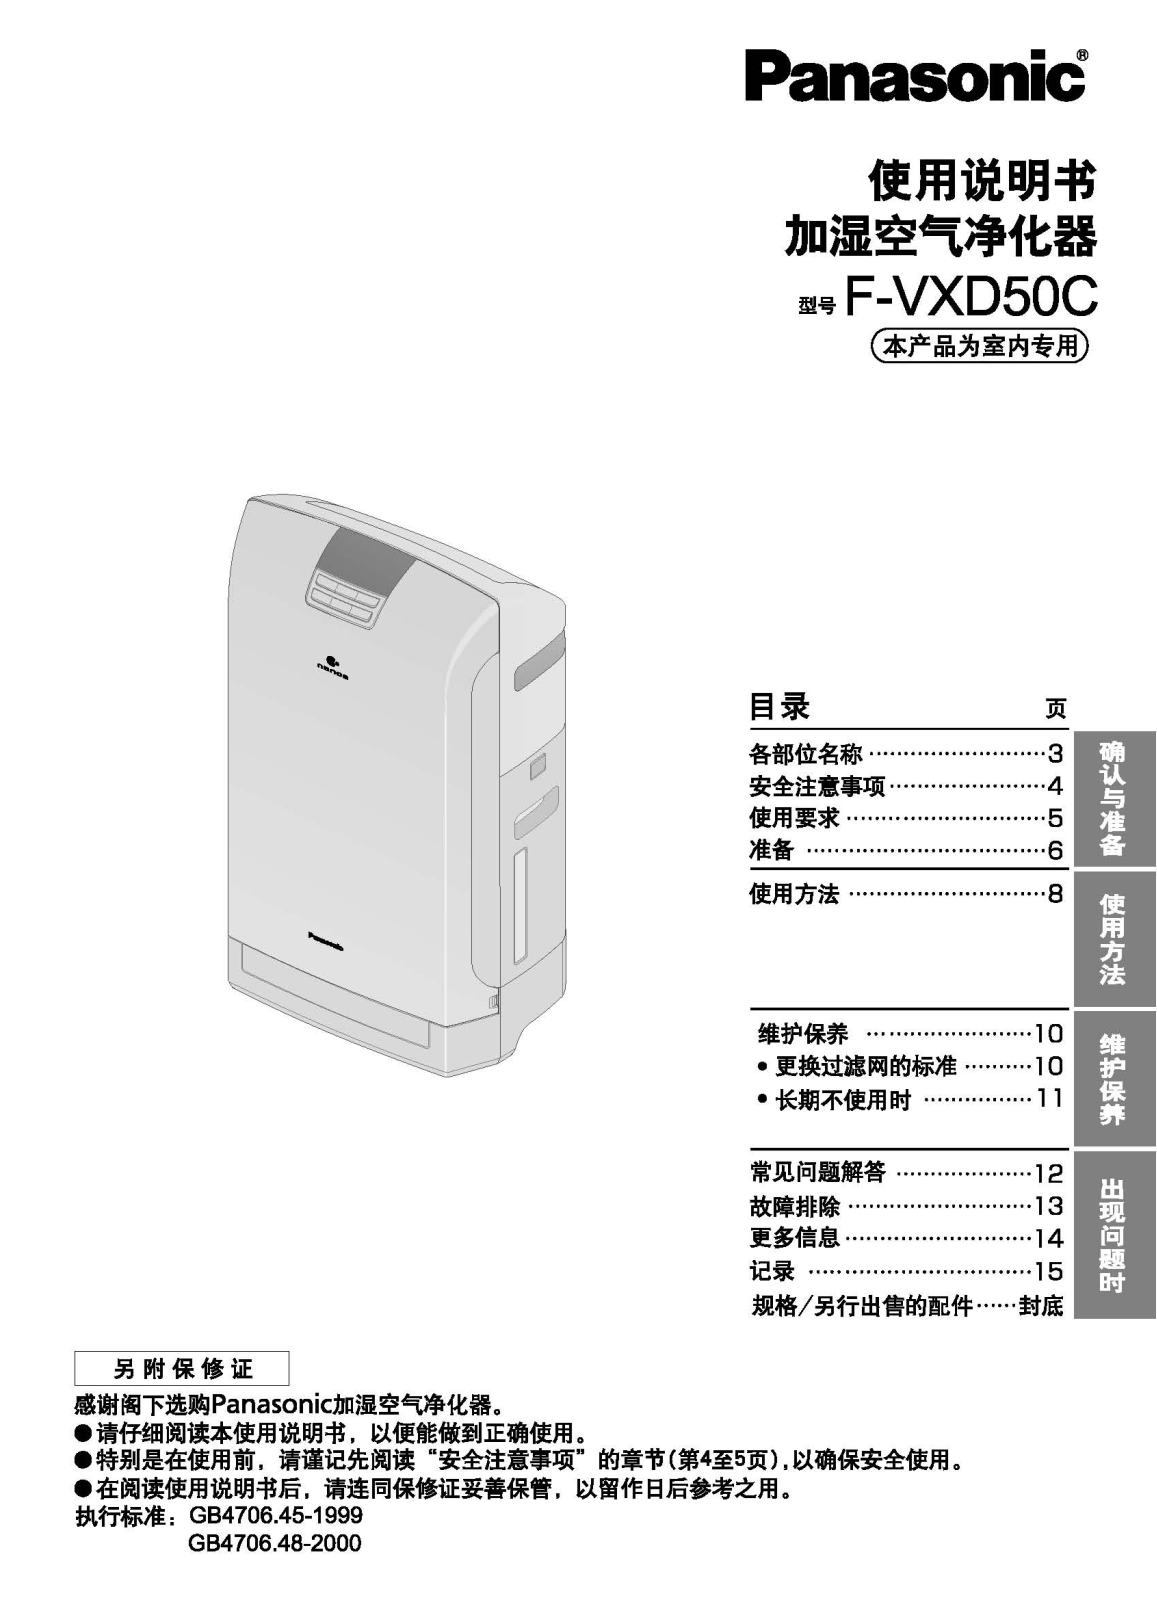 Panasonic F-VXD50C User Manual